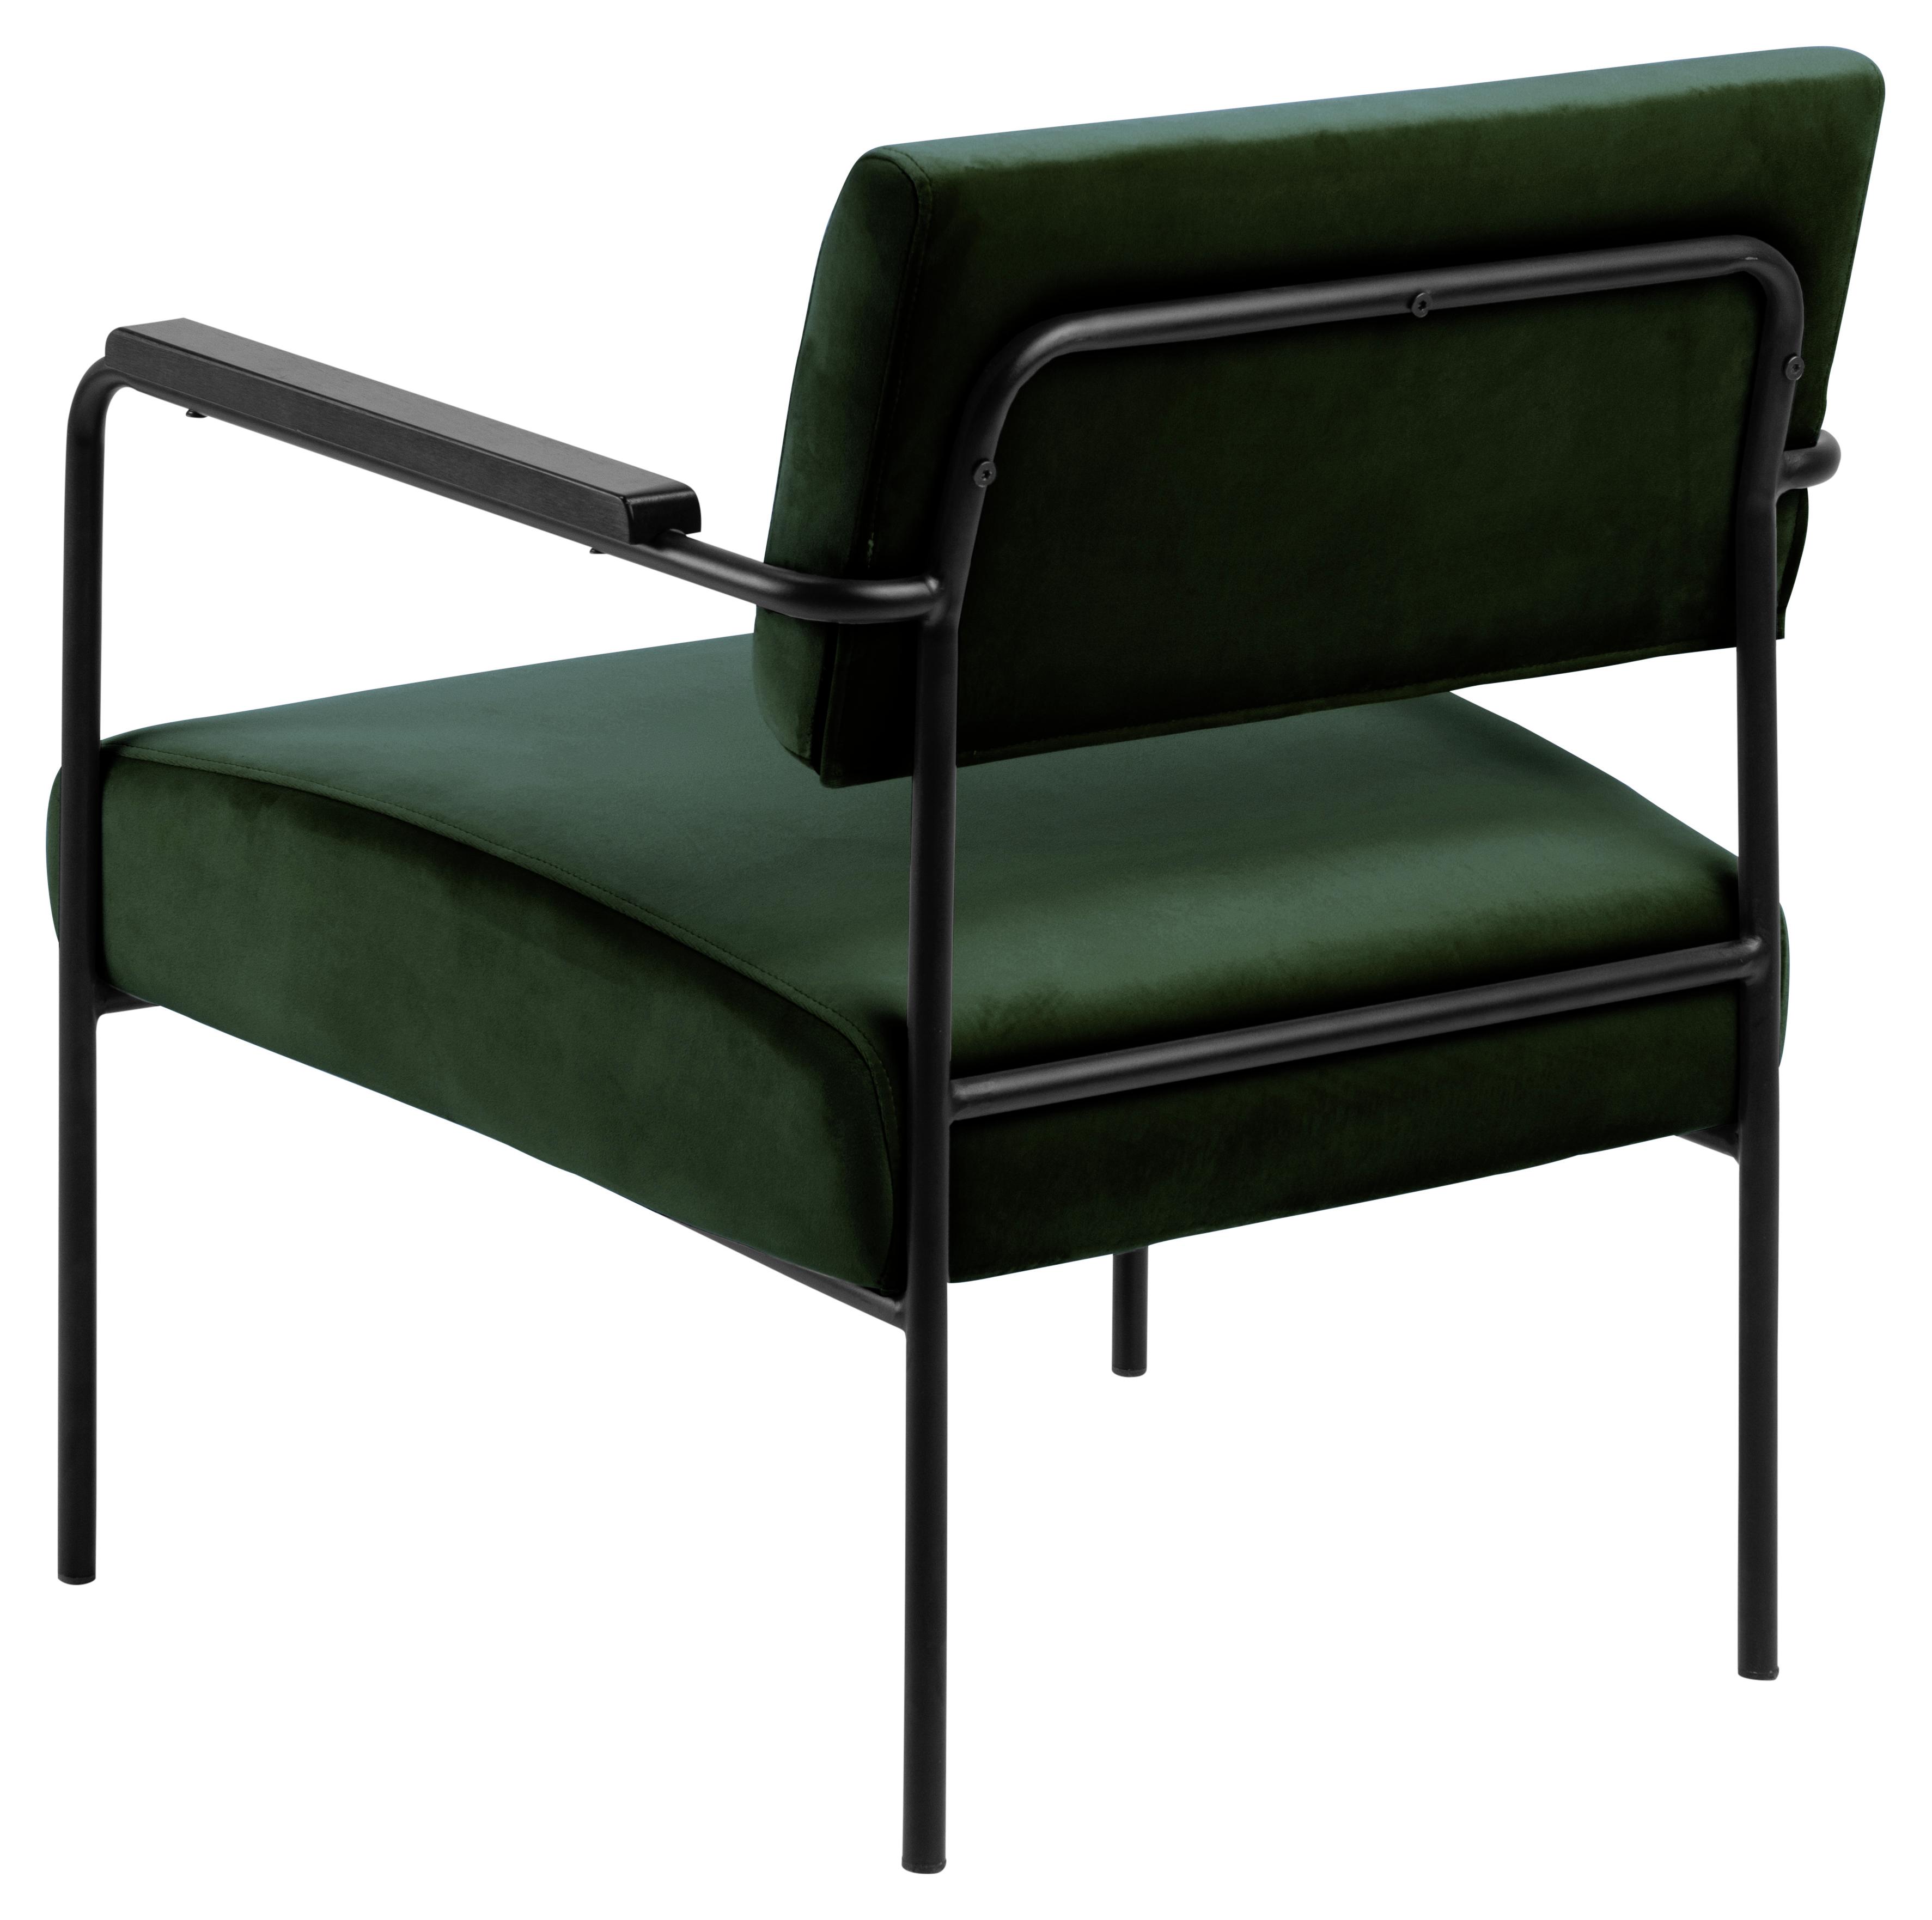 Kreslo Cloe Tmavá Zelená - čierna/zelená, Design, kov/textil (66,5/77/65cm)